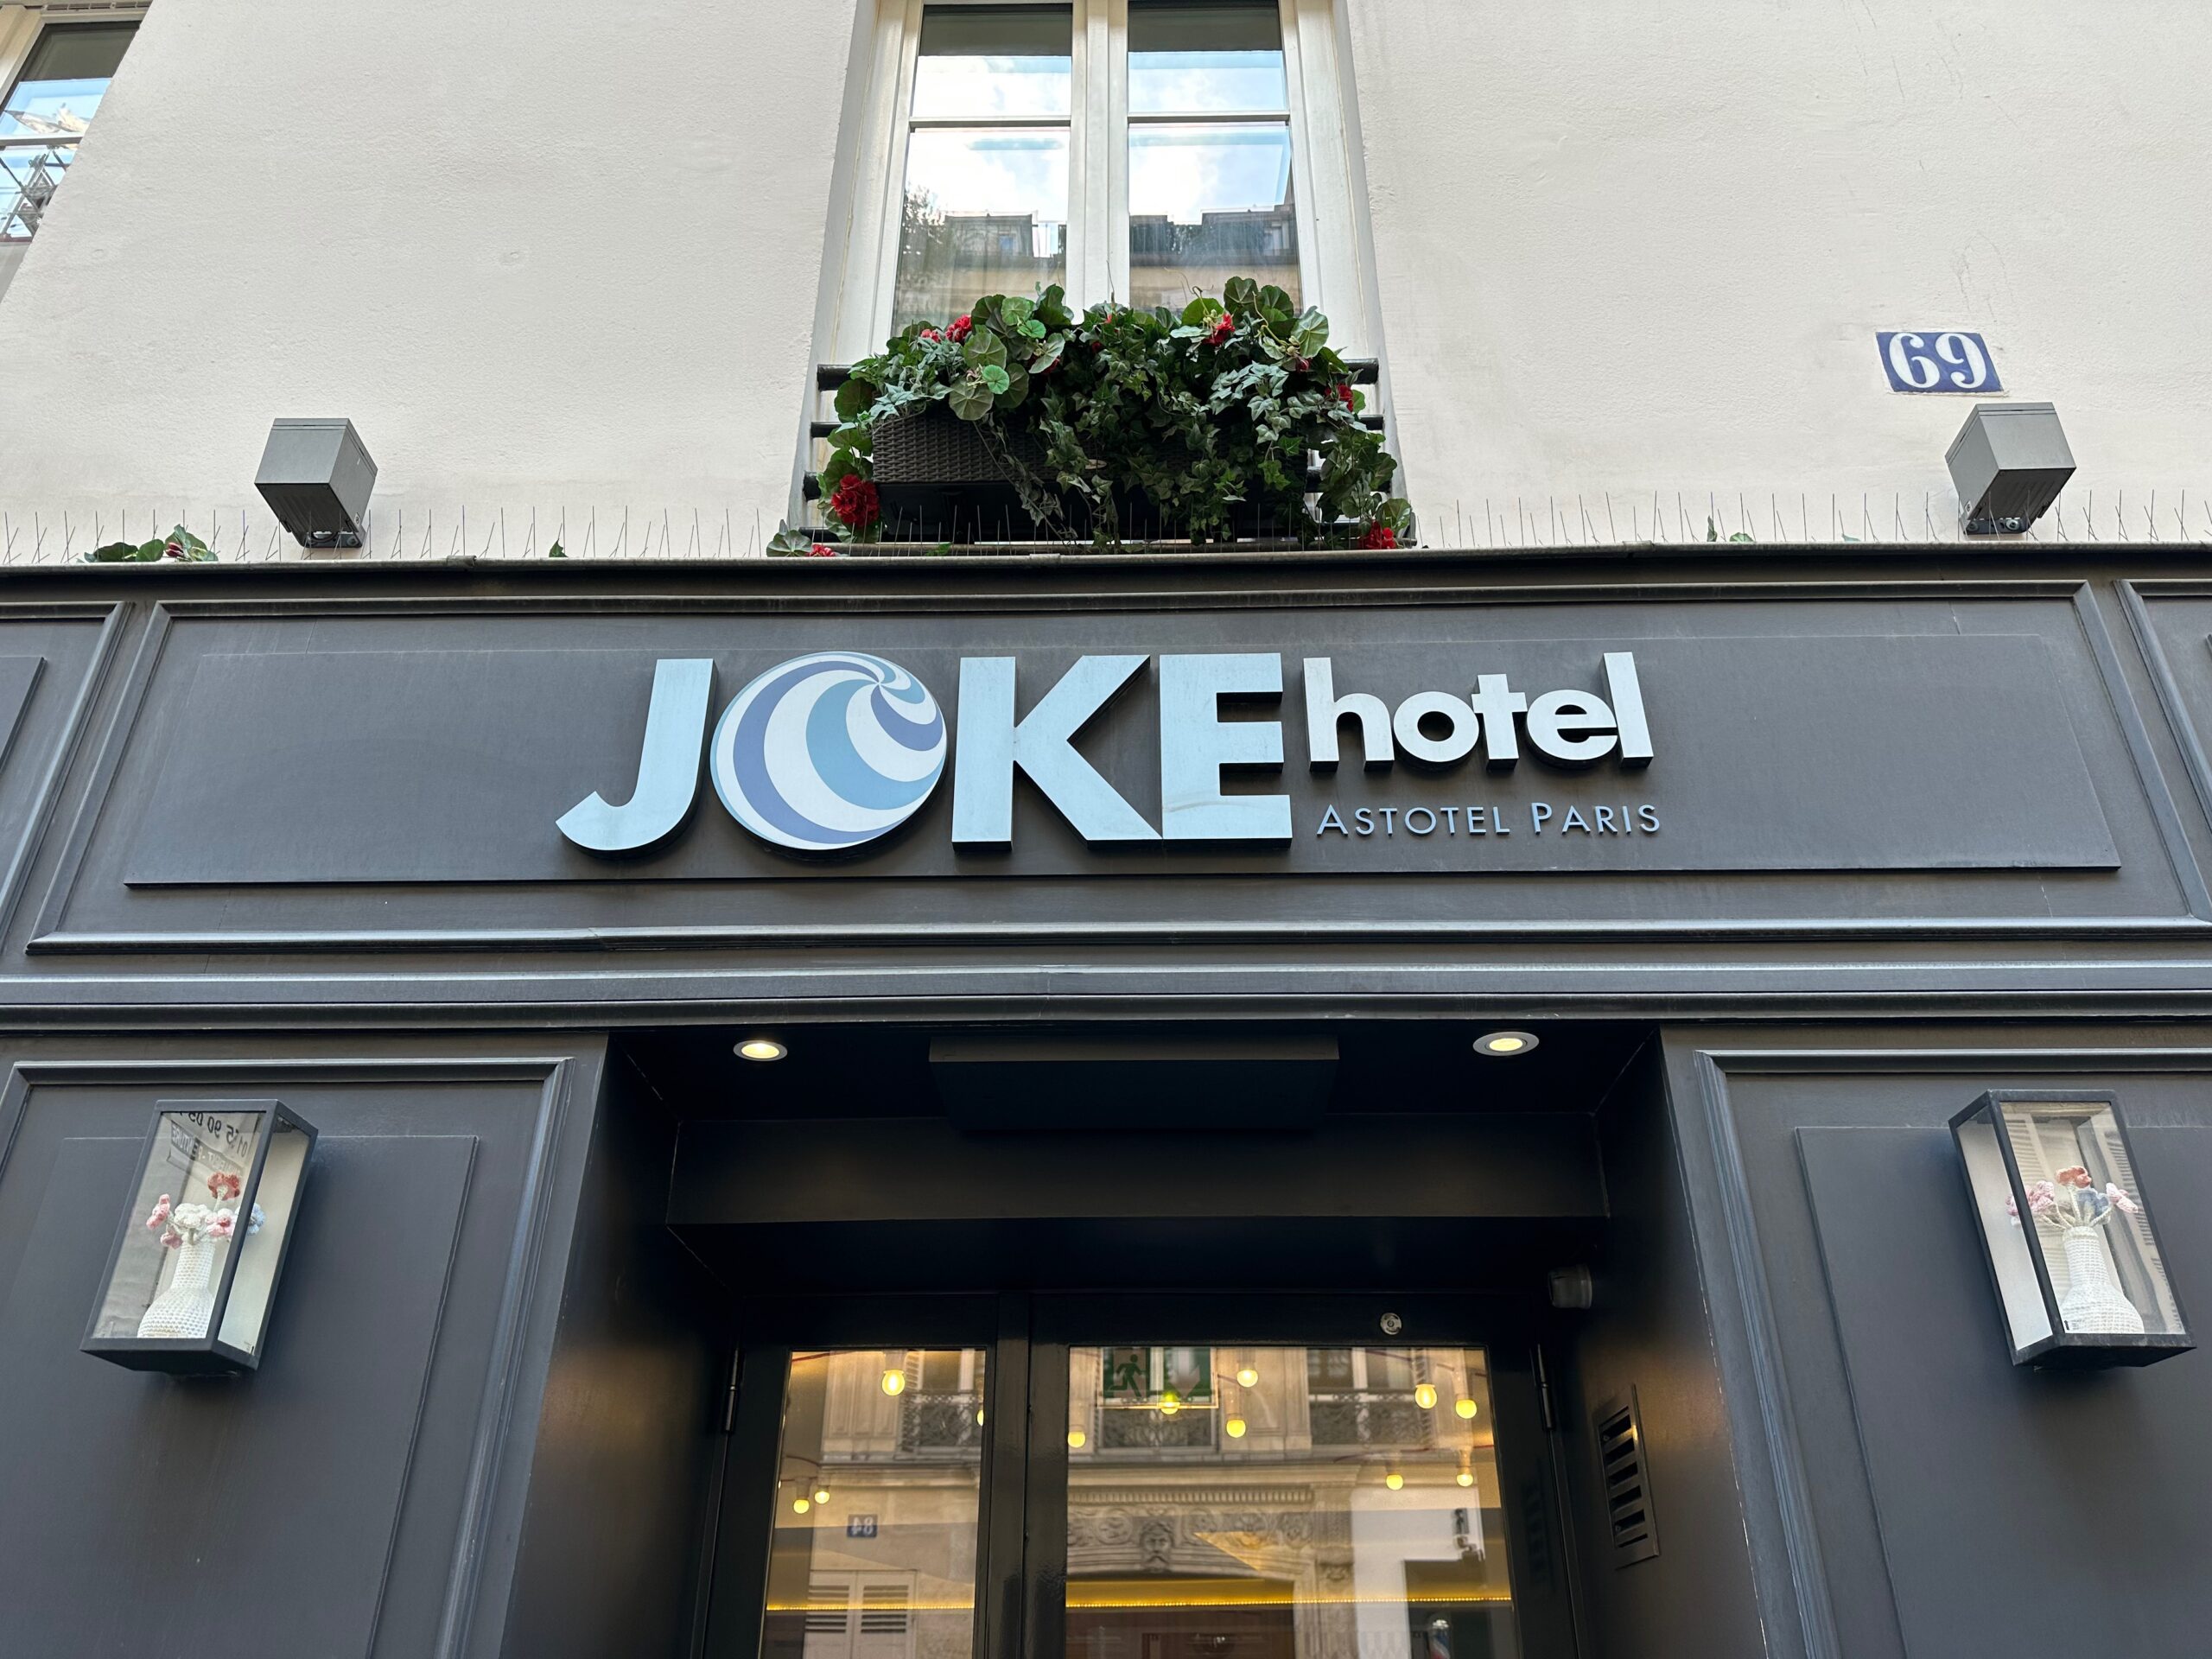 Joke Hotels